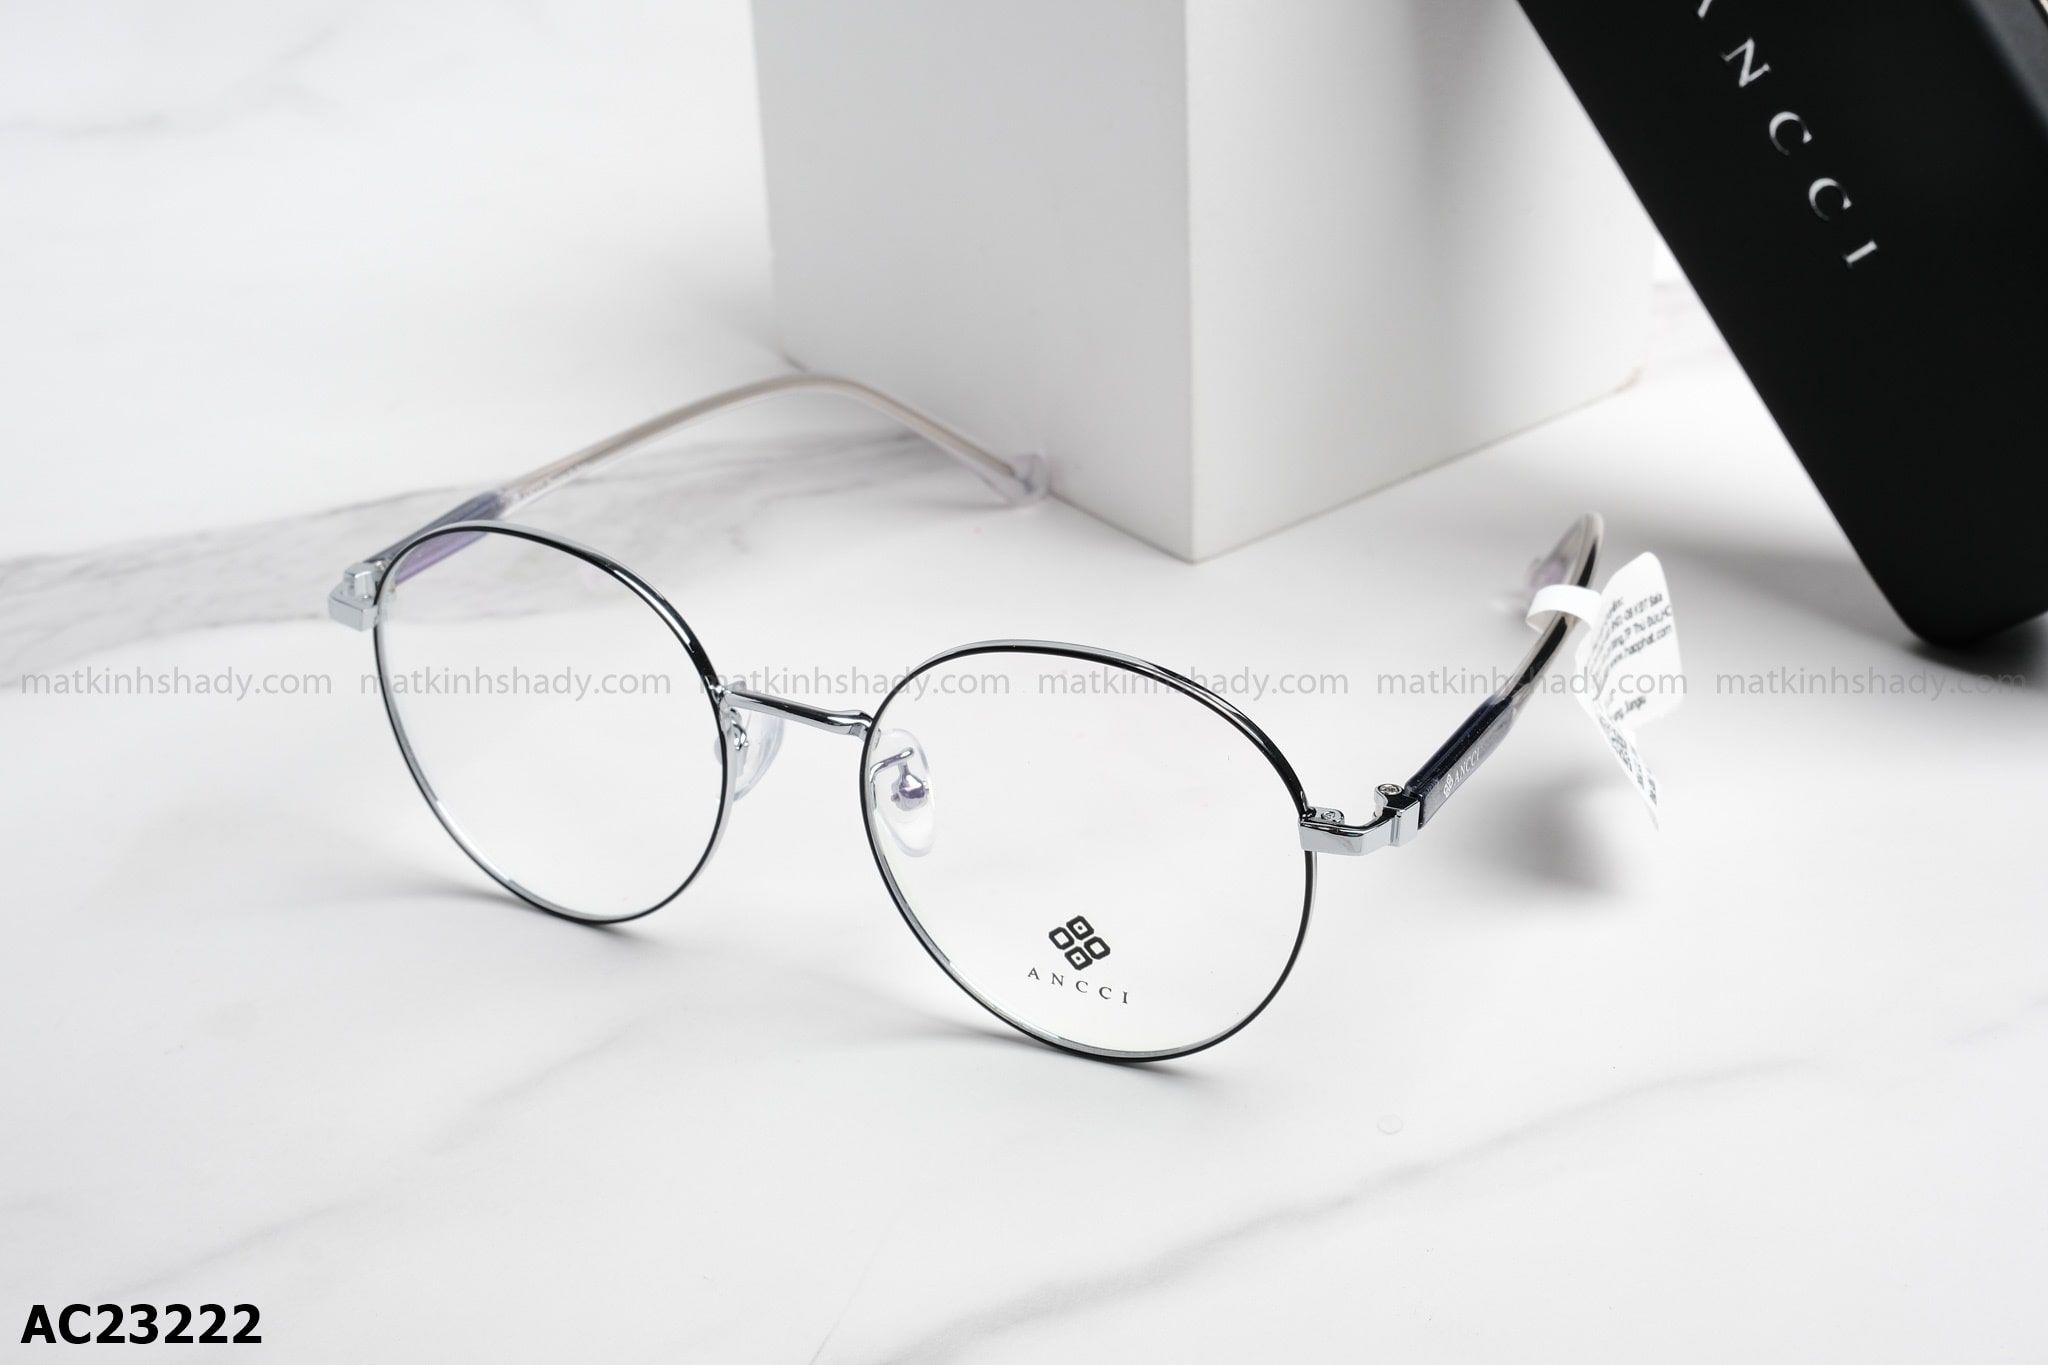  ANCCI Eyewear - Glasses - AC23222 